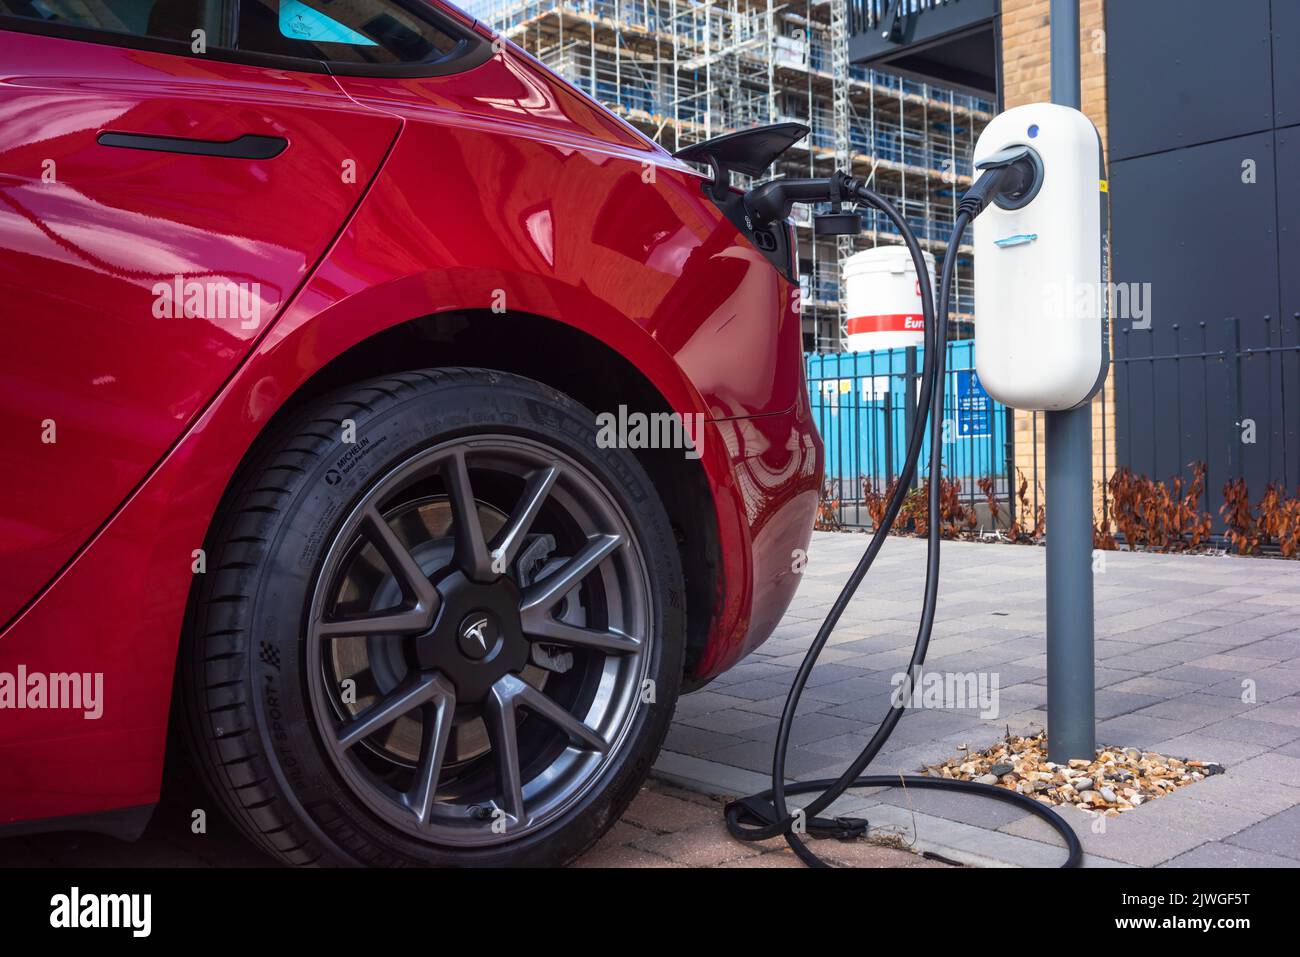 Une voiture rouge Tesla charge sa batterie à un point de charge de véhicule électrique à Southampton, Angleterre, Royaume-Uni Banque D'Images